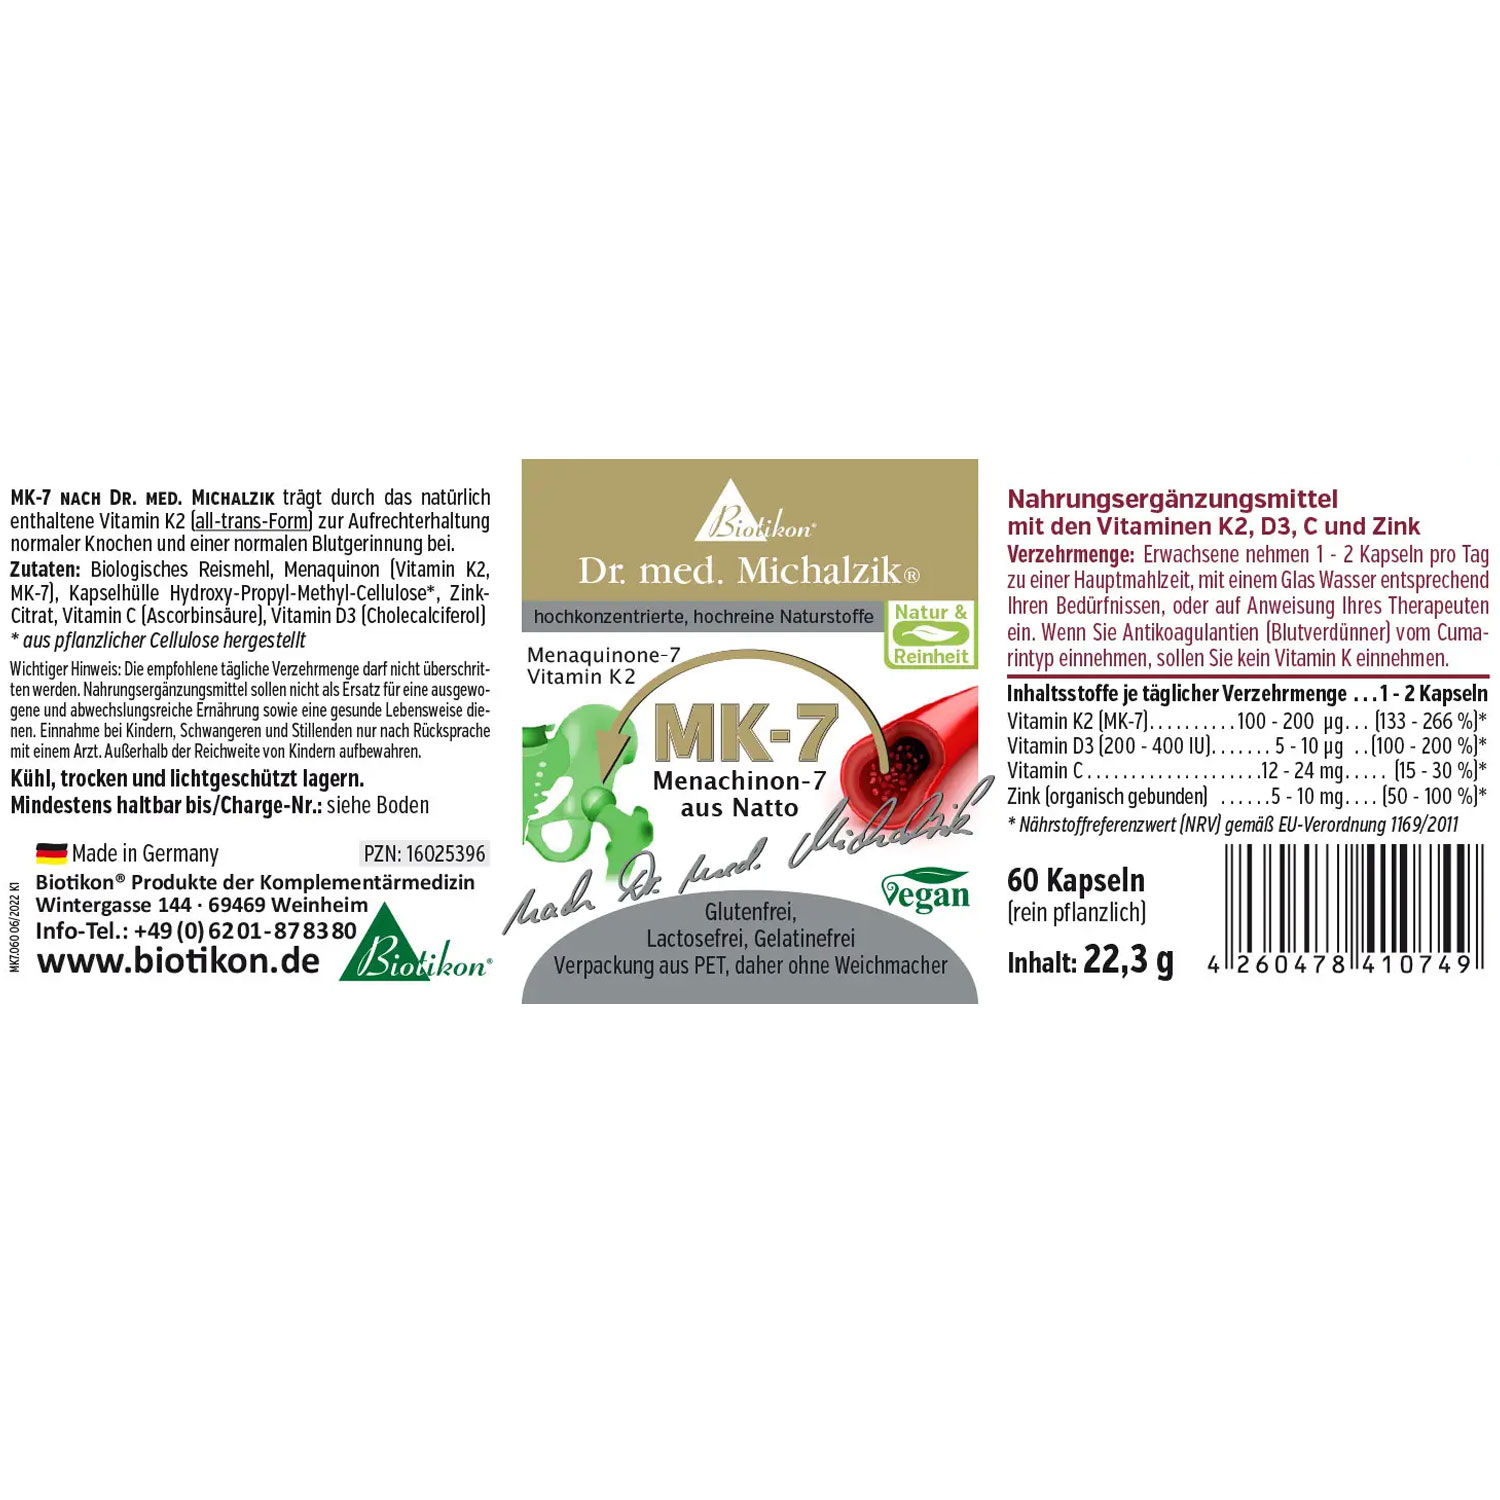 Vitamin K2 - MK7 von Biotikon - Etikett